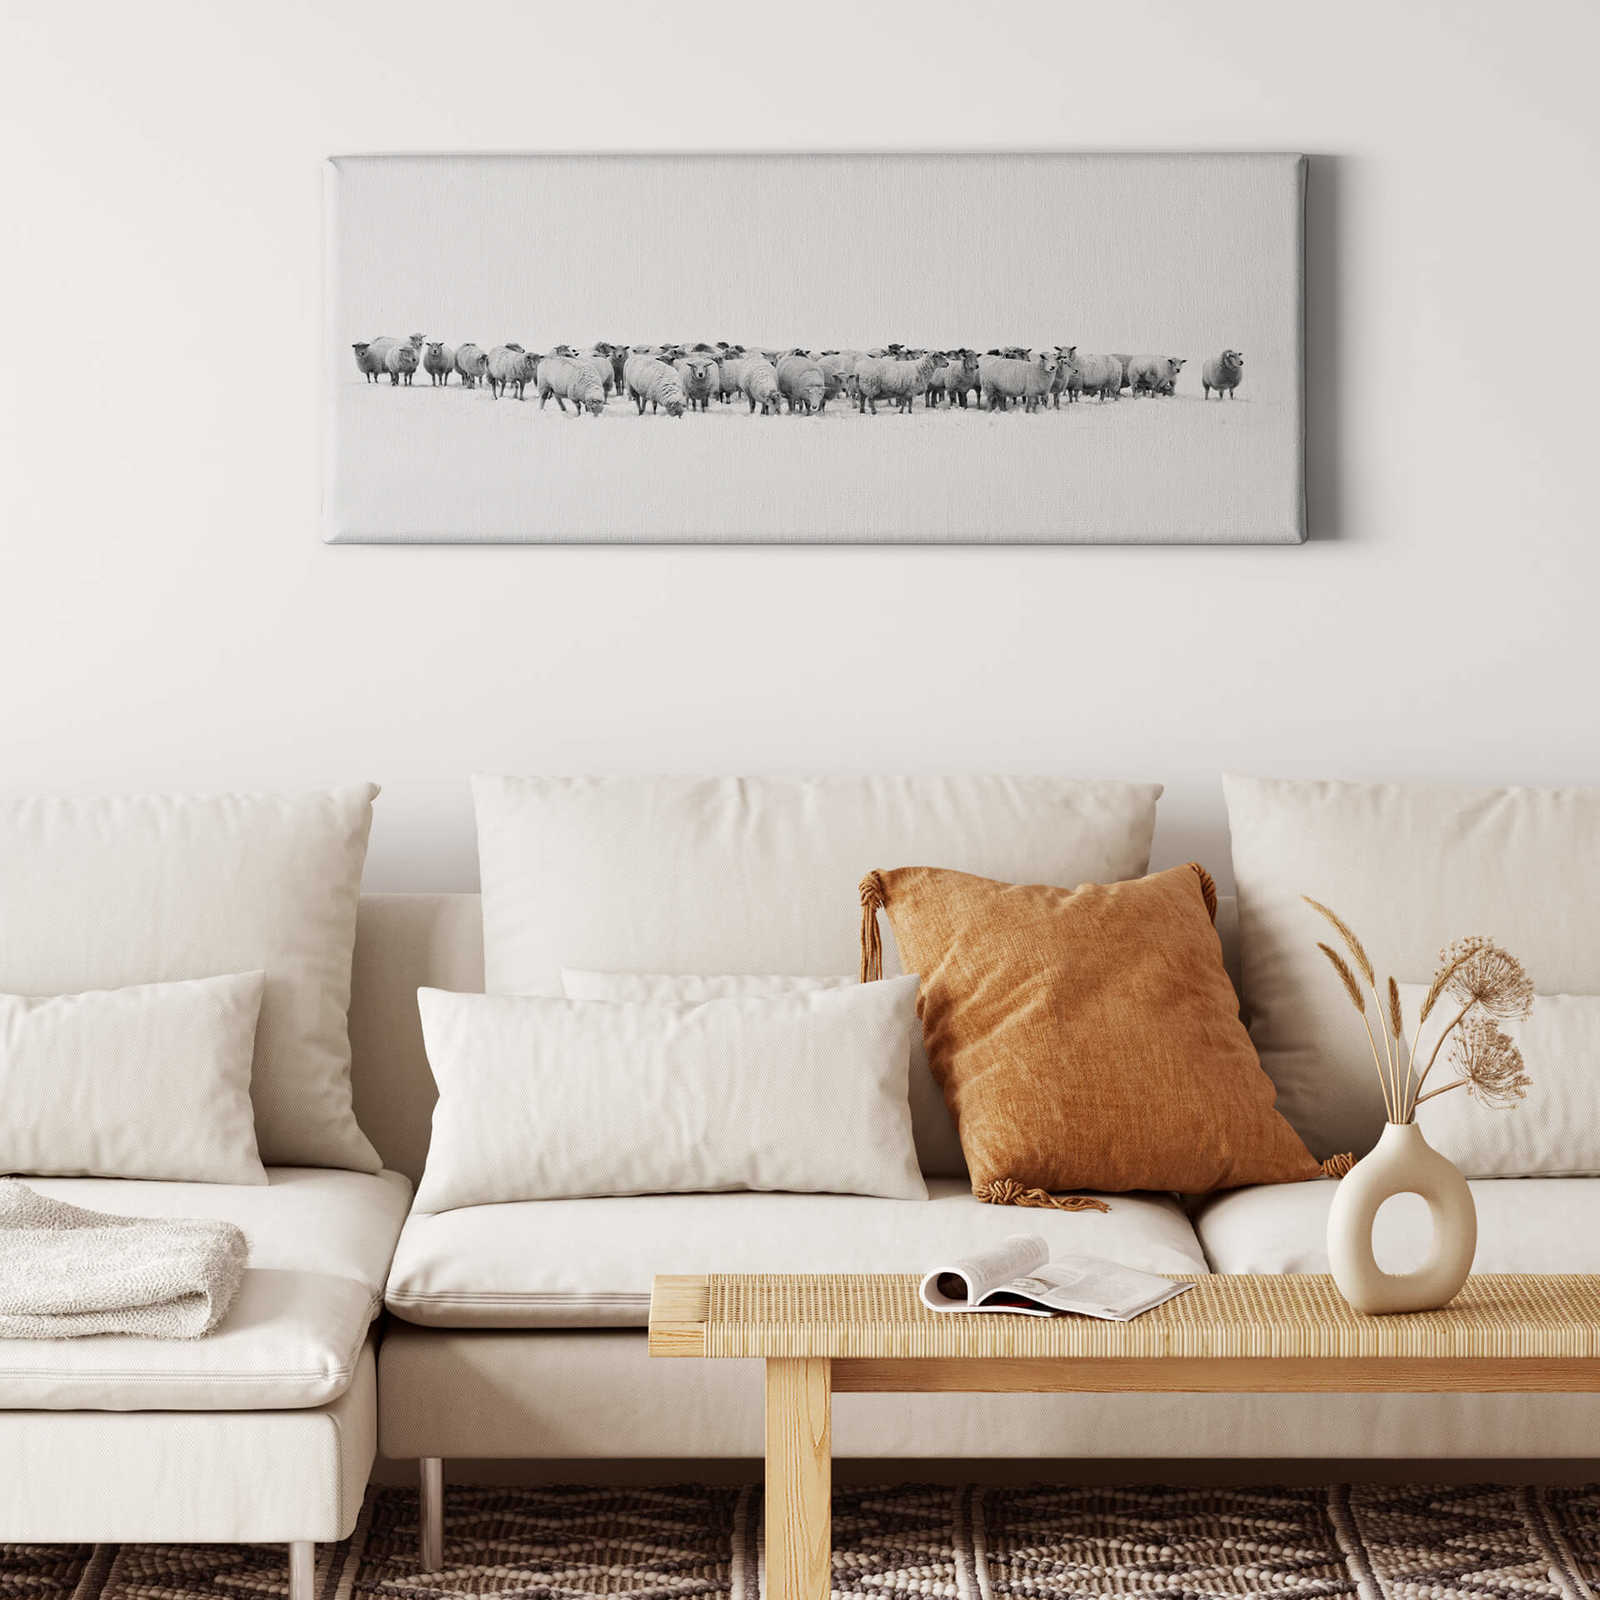             Panorama Canvas schilderij Kudde schapen in het wit - 1.00 m x 0.40 m
        